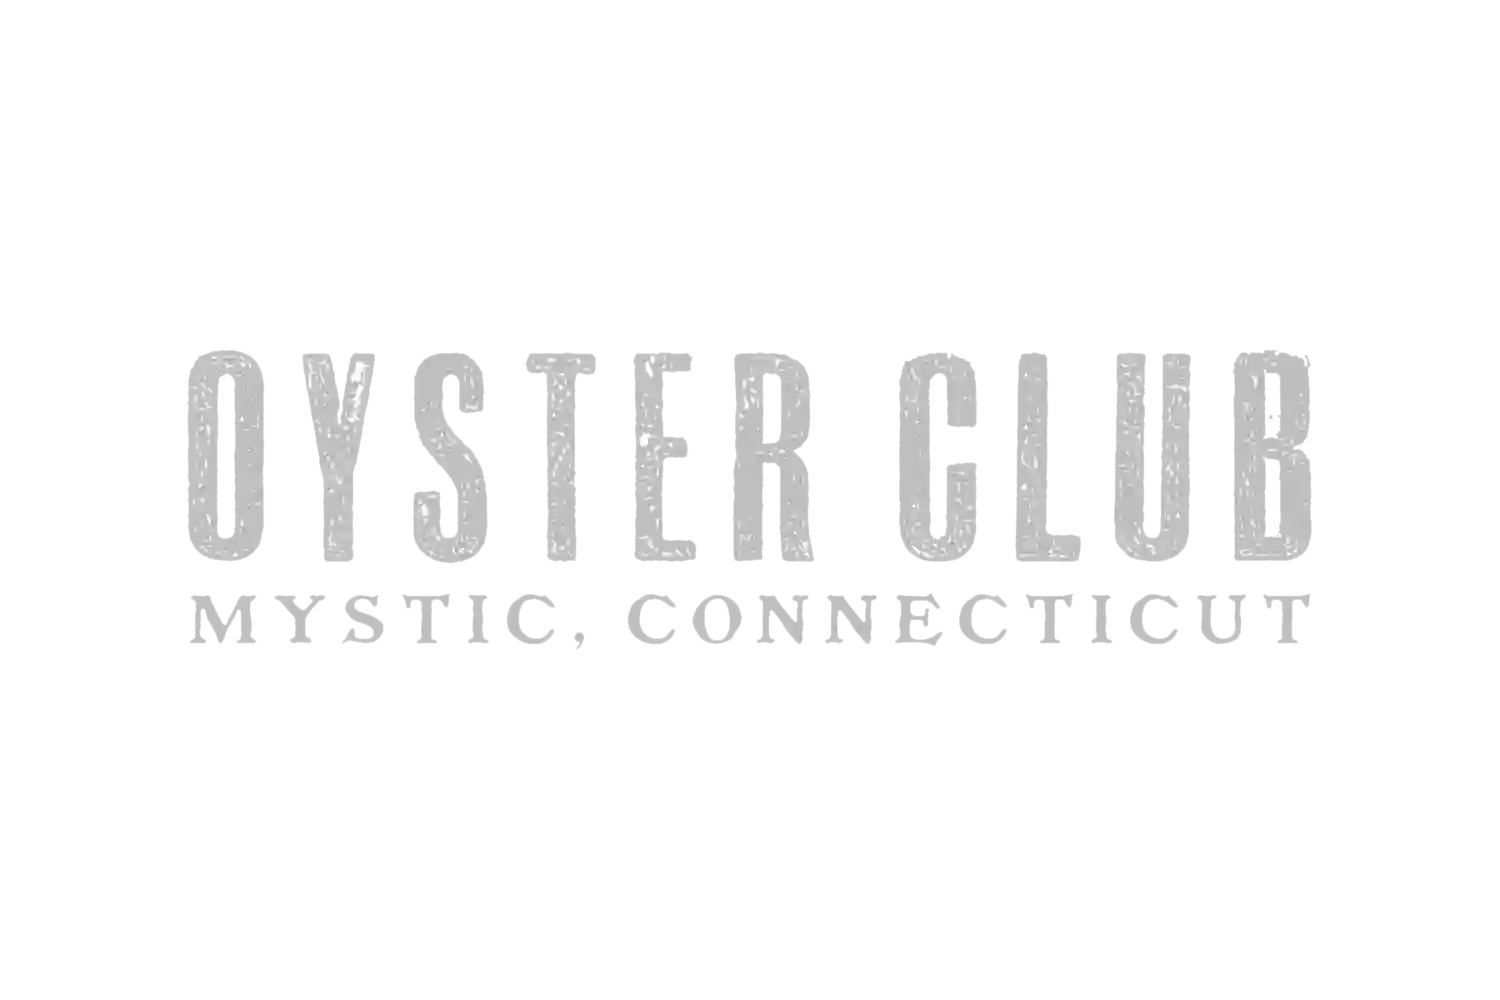 Oyster Club